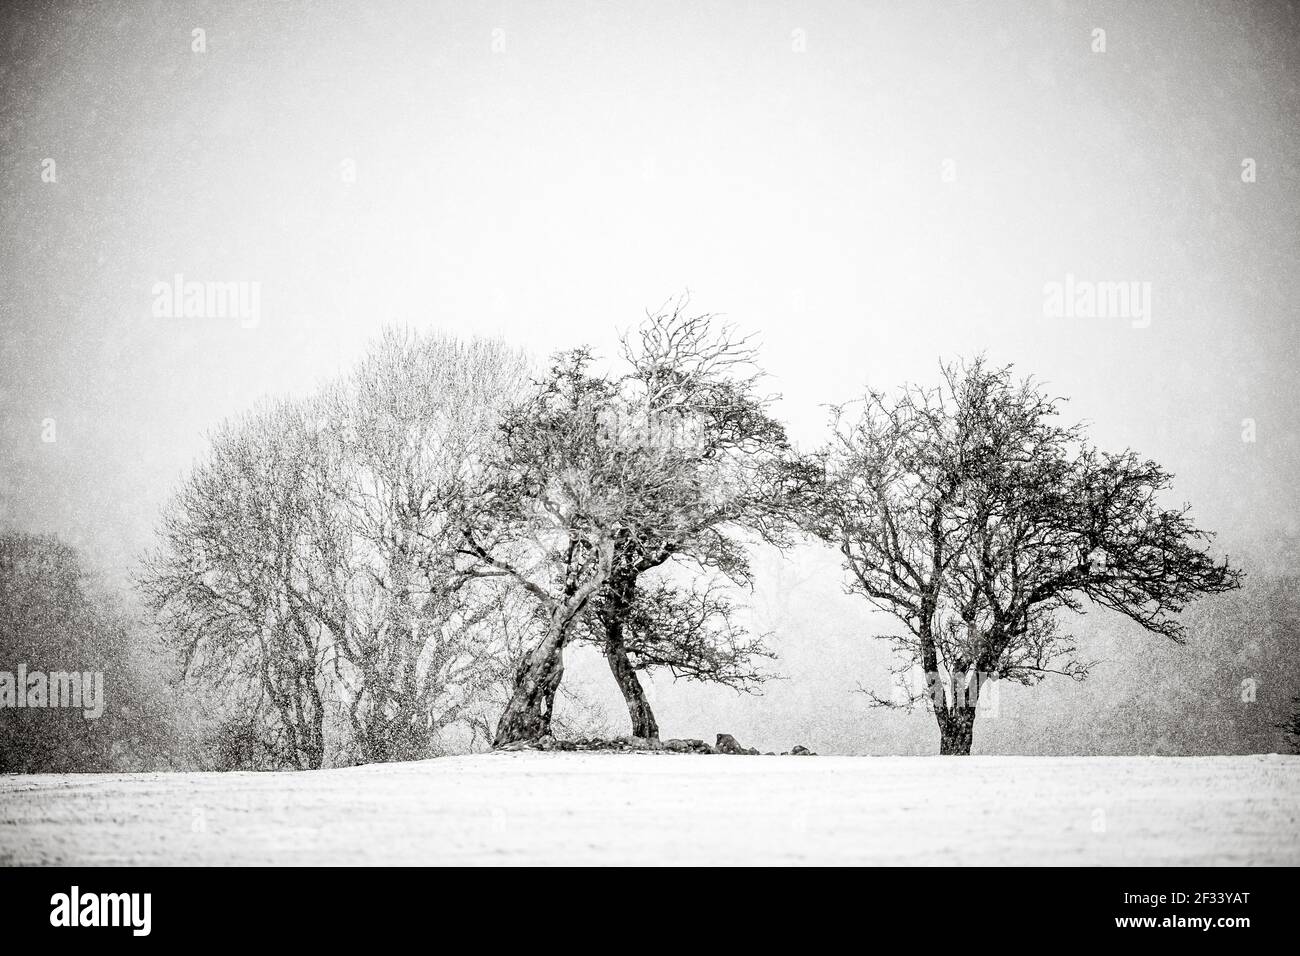 alberi bianchi e neri nella scena invernale neve che cade bene arte Foto Stock